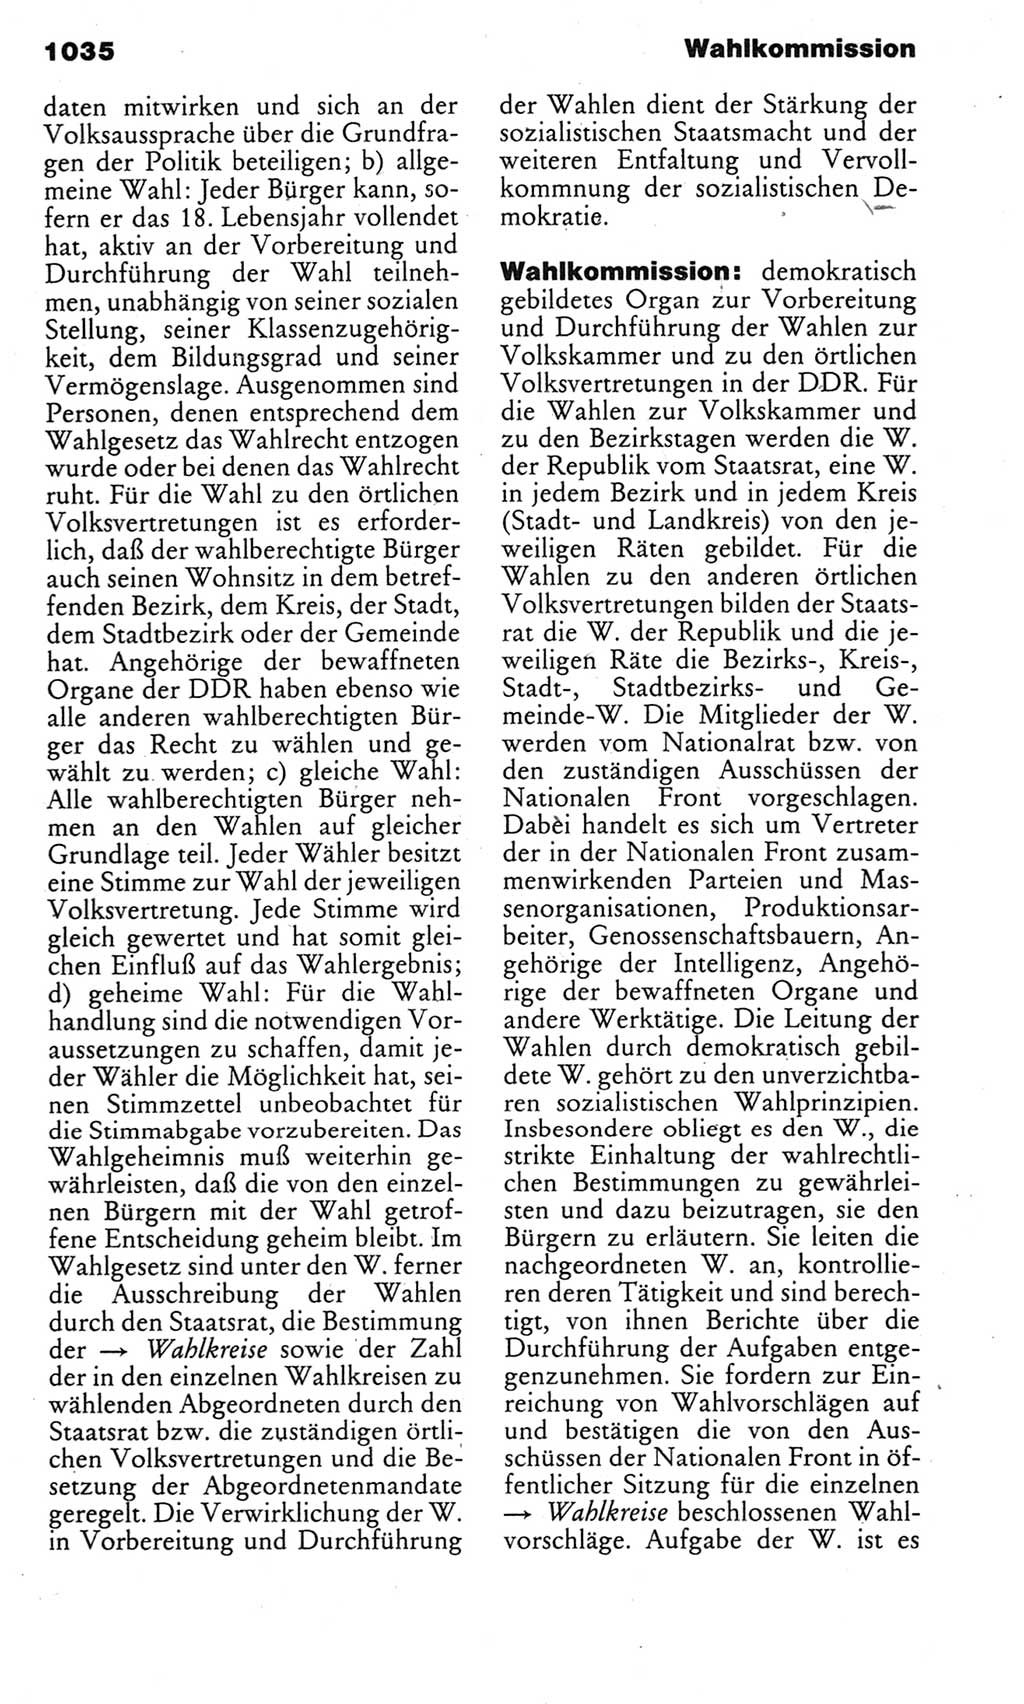 Kleines politisches Wörterbuch [Deutsche Demokratische Republik (DDR)] 1983, Seite 1035 (Kl. pol. Wb. DDR 1983, S. 1035)